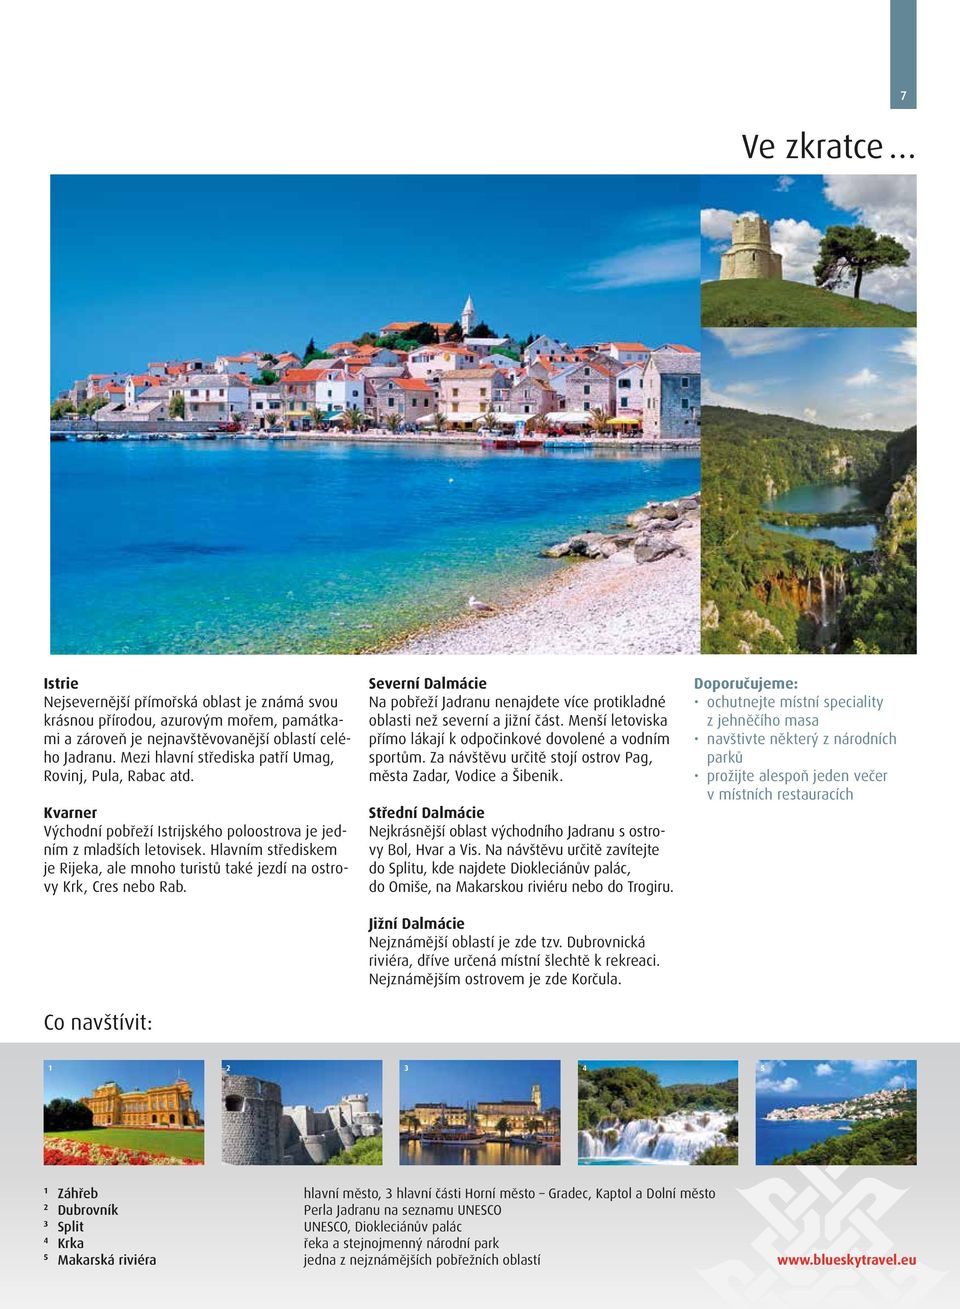 Hlavním střediskem je Rijeka, ale mnoho turistů také jezdí na ostrovy Krk, Cres nebo Rab. Co navštívit: Severní Dalmácie Na pobřeží Jadranu nenajdete více protikladné oblasti než severní a jižní část.